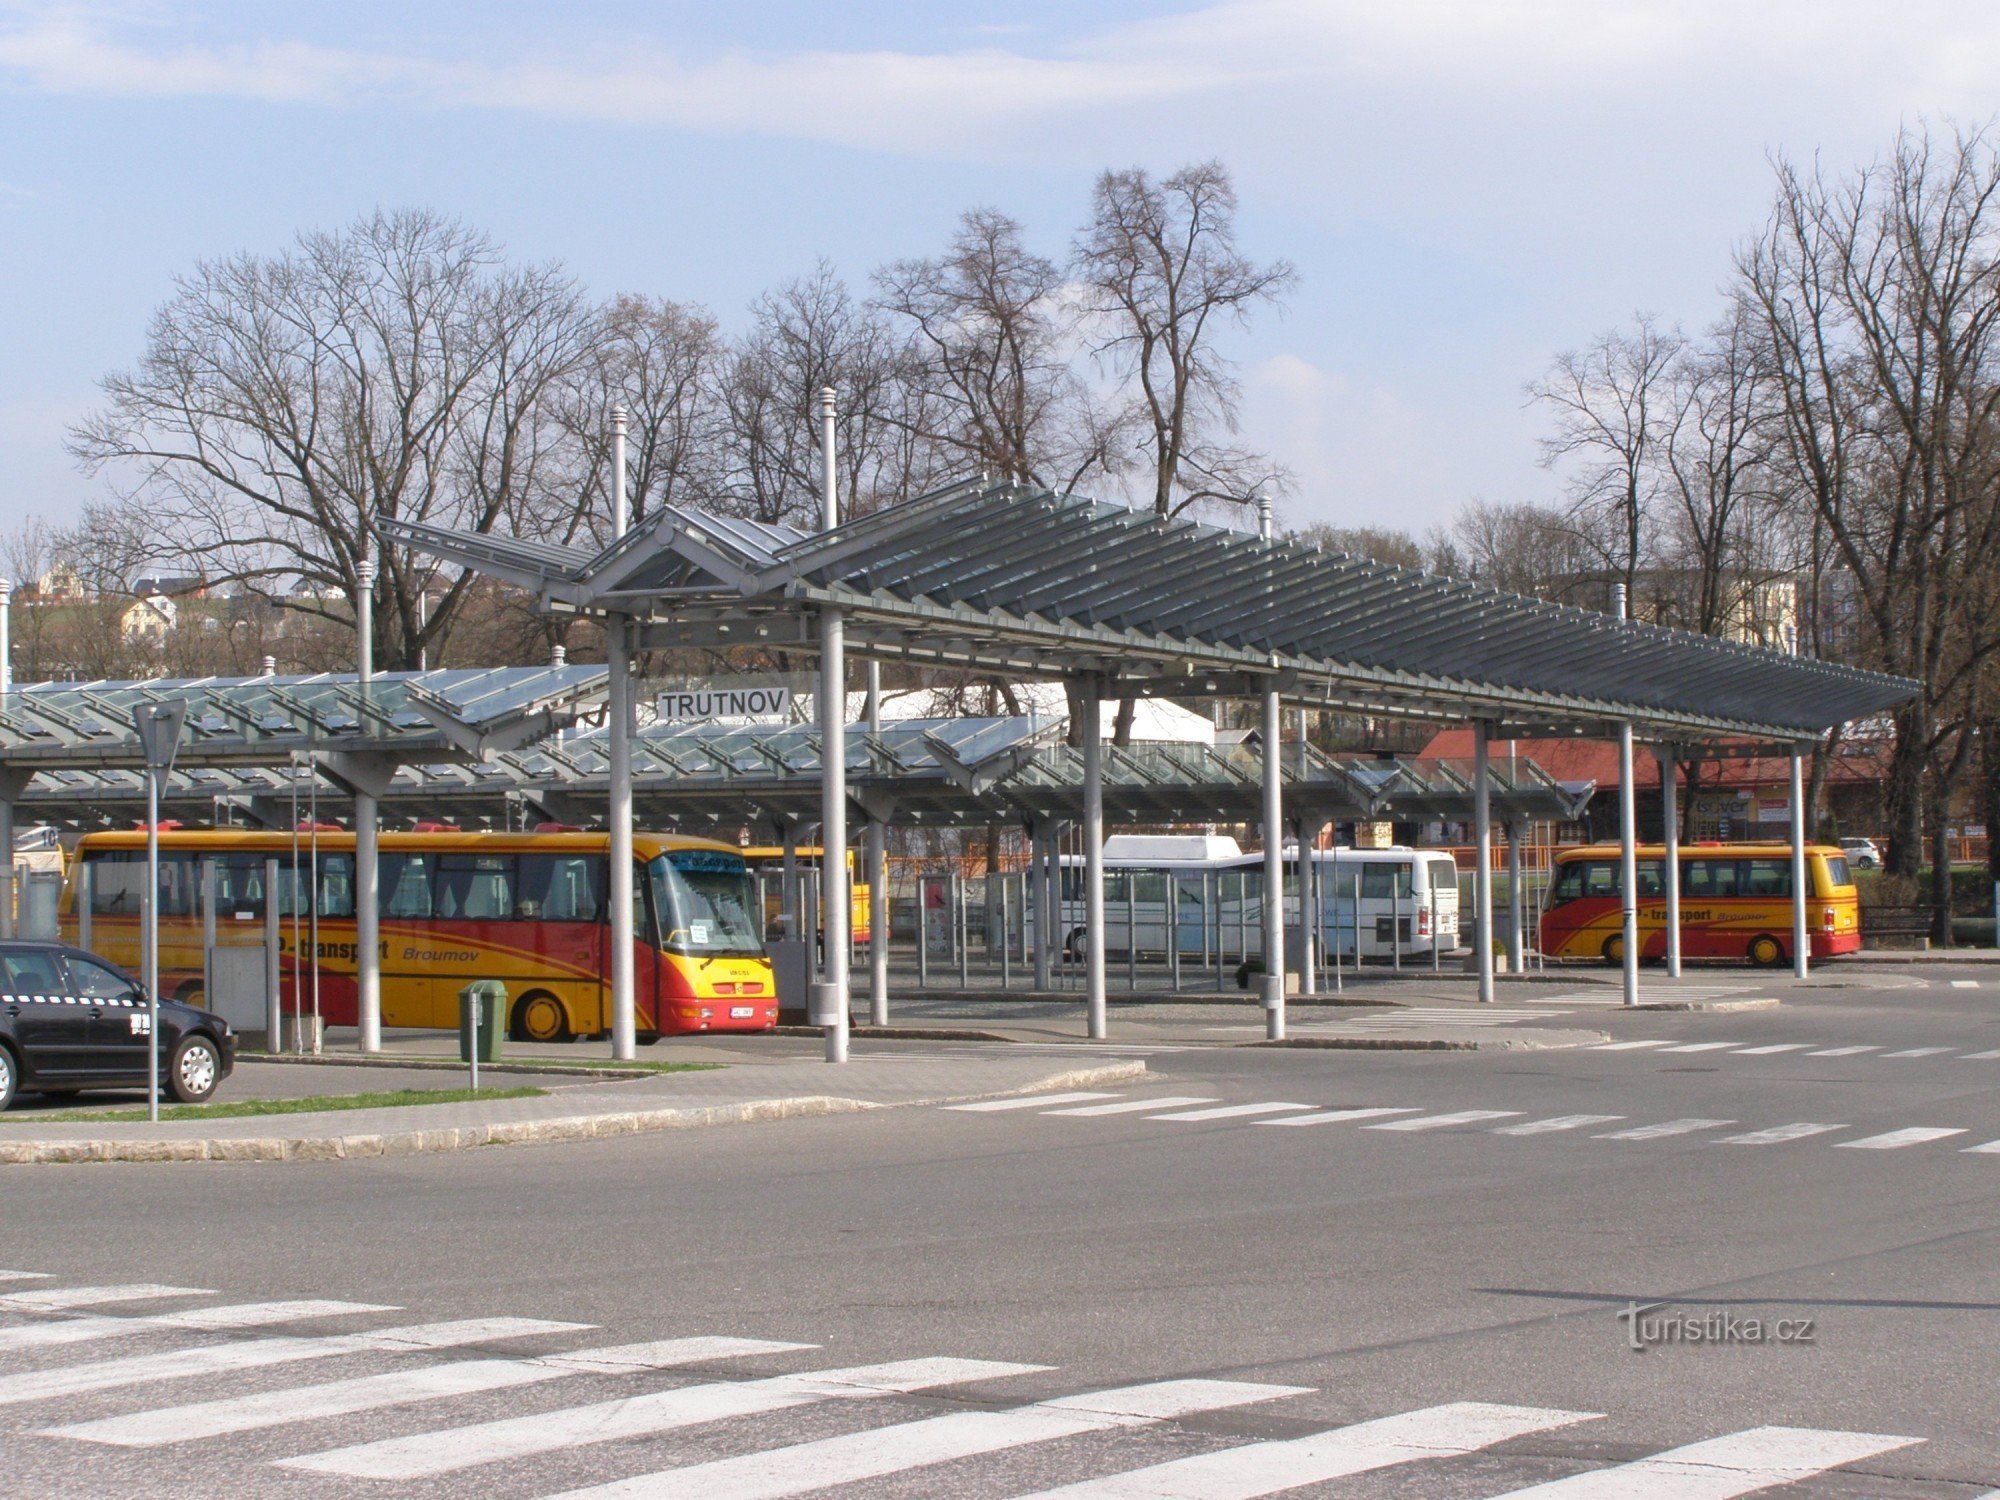 Estação de ônibus Trutnov